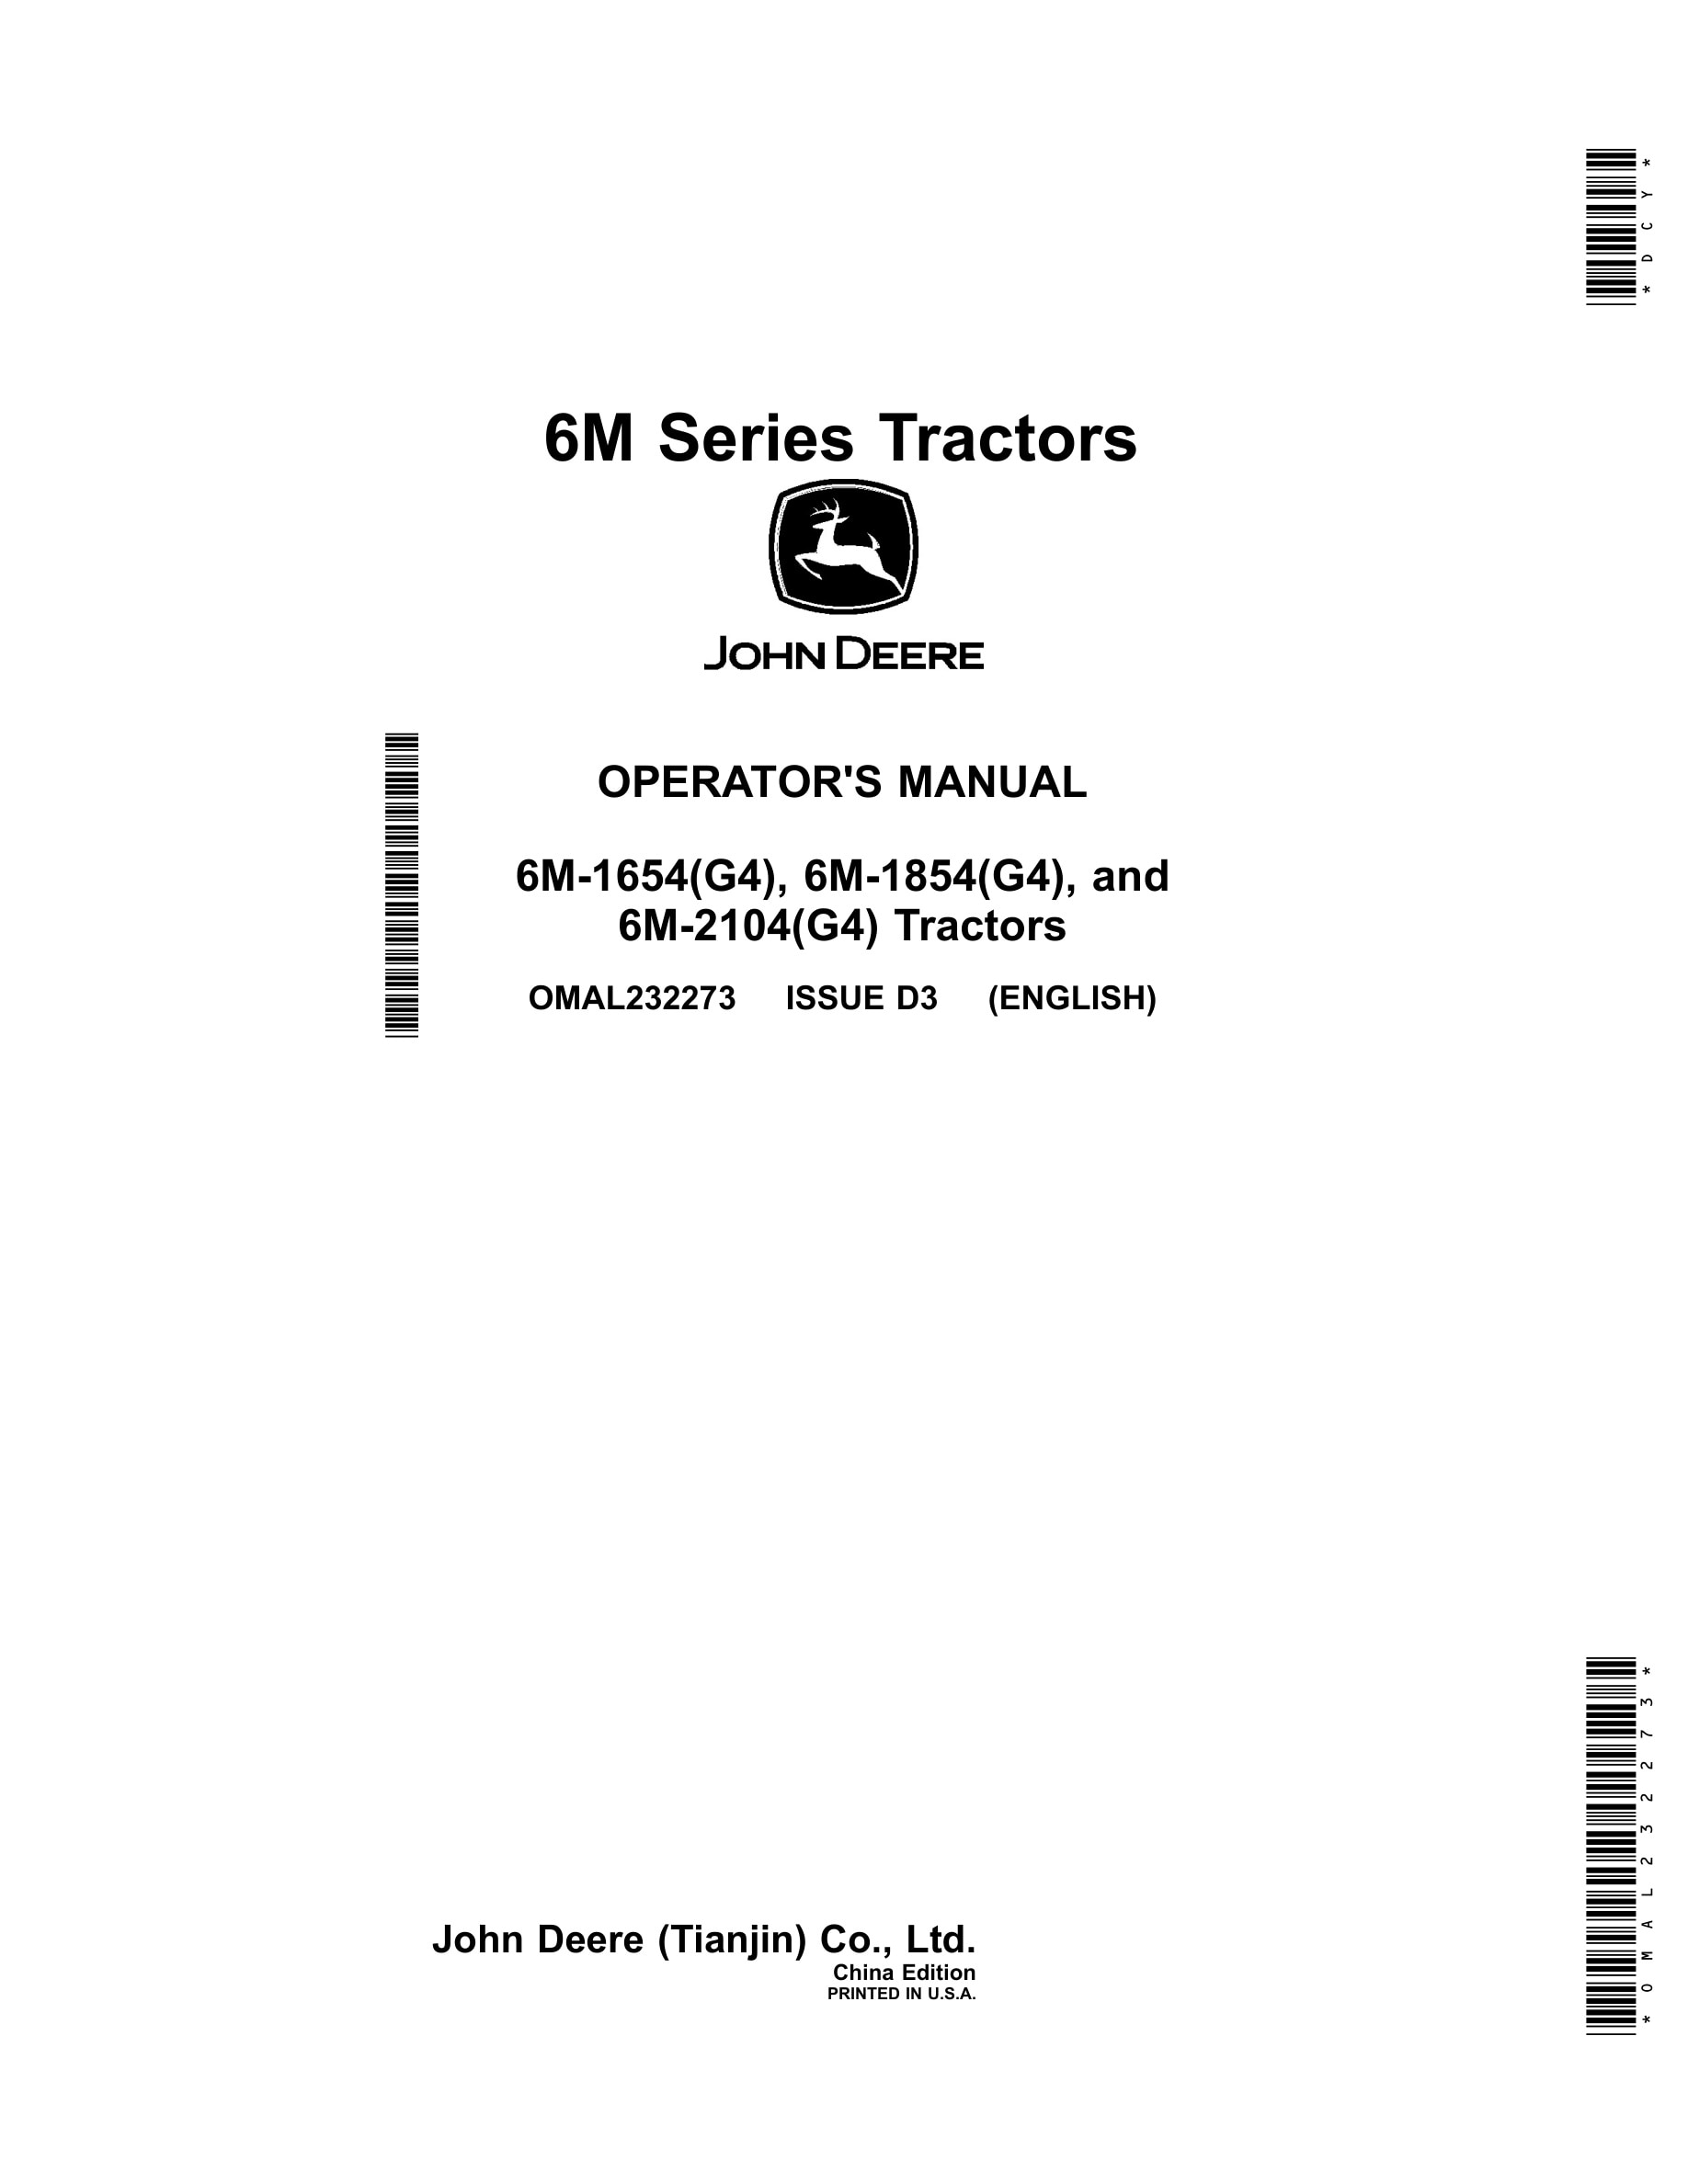 John Deere 6m-1654(g4), 6m-1854(g4), And 6m-2104(g4) Tractors Operator Manuals OMAL232273-1